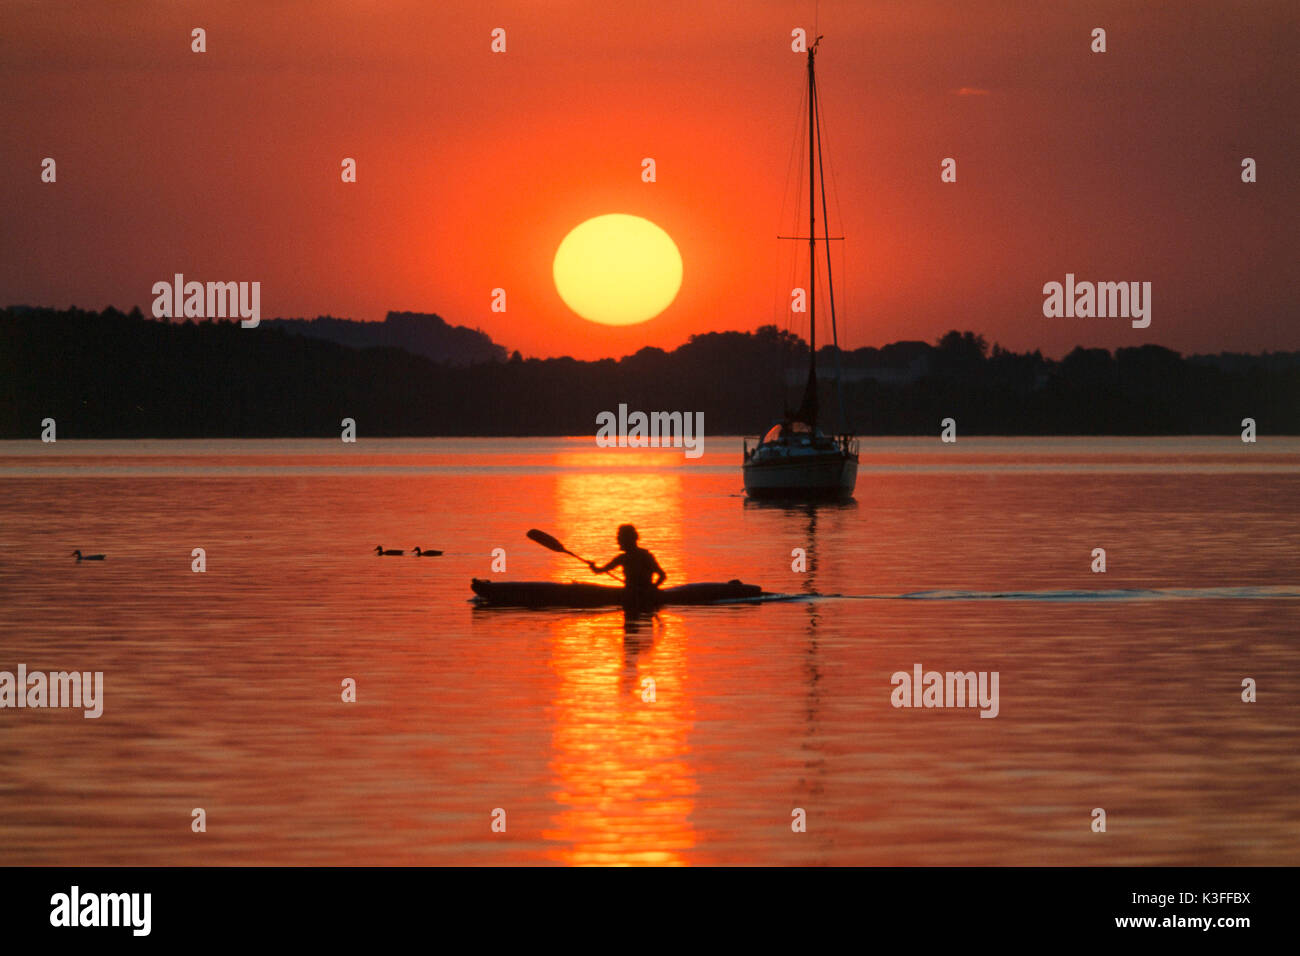 Kayakist in front of sundown in Ammersee Stock Photo